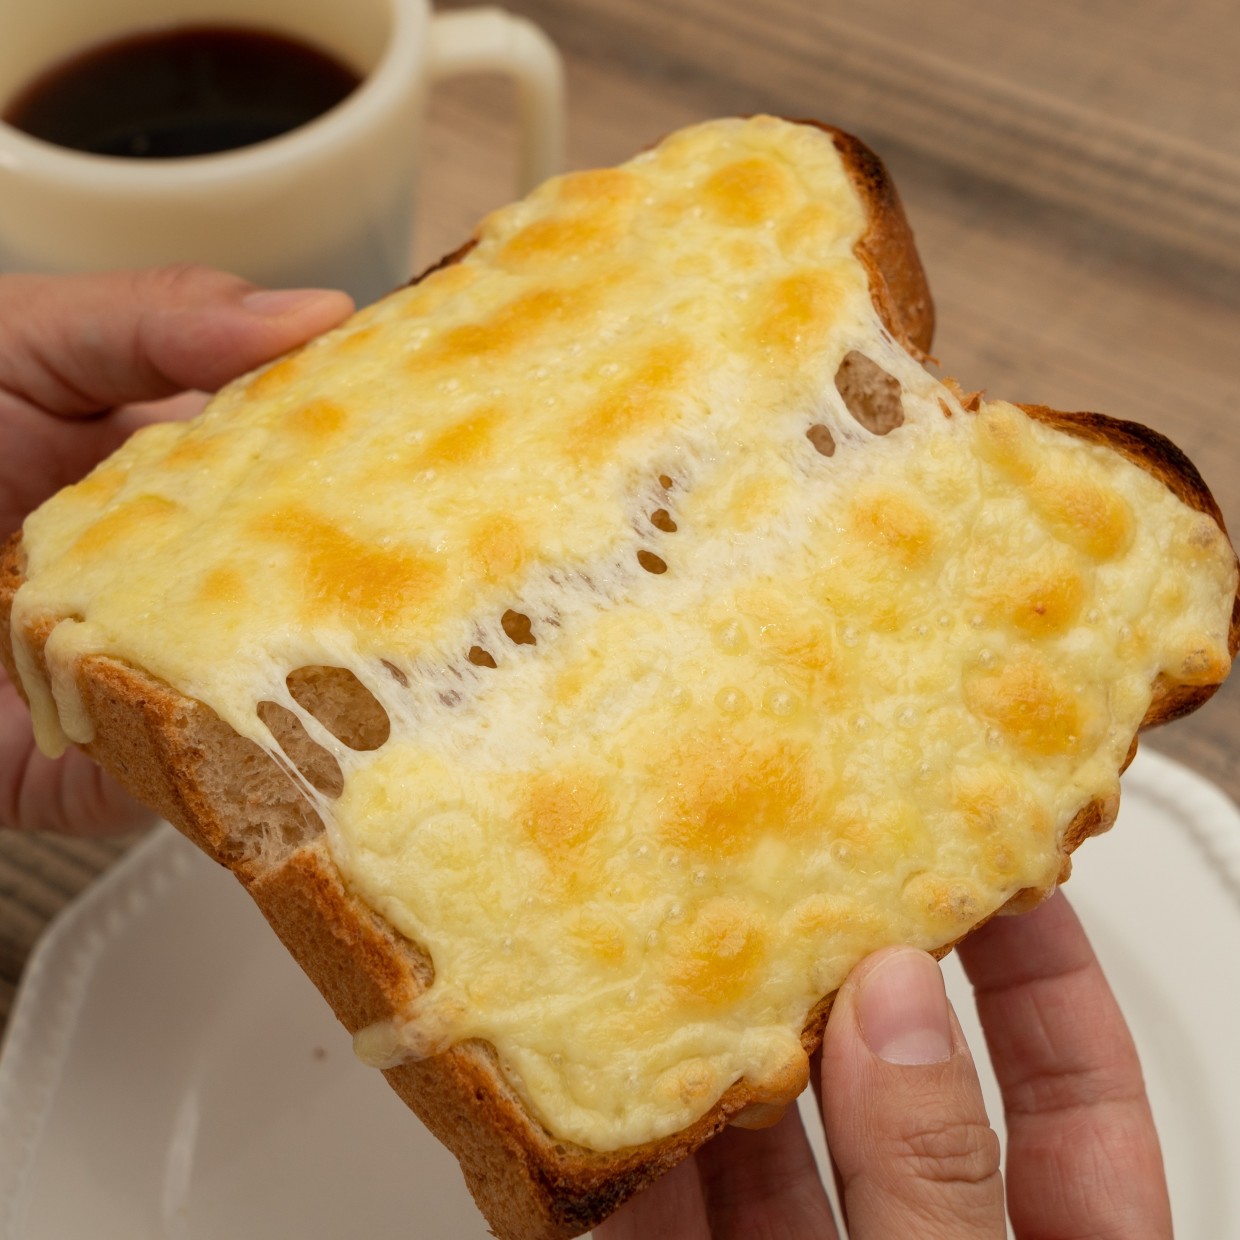  「究極のチーズトースト」 